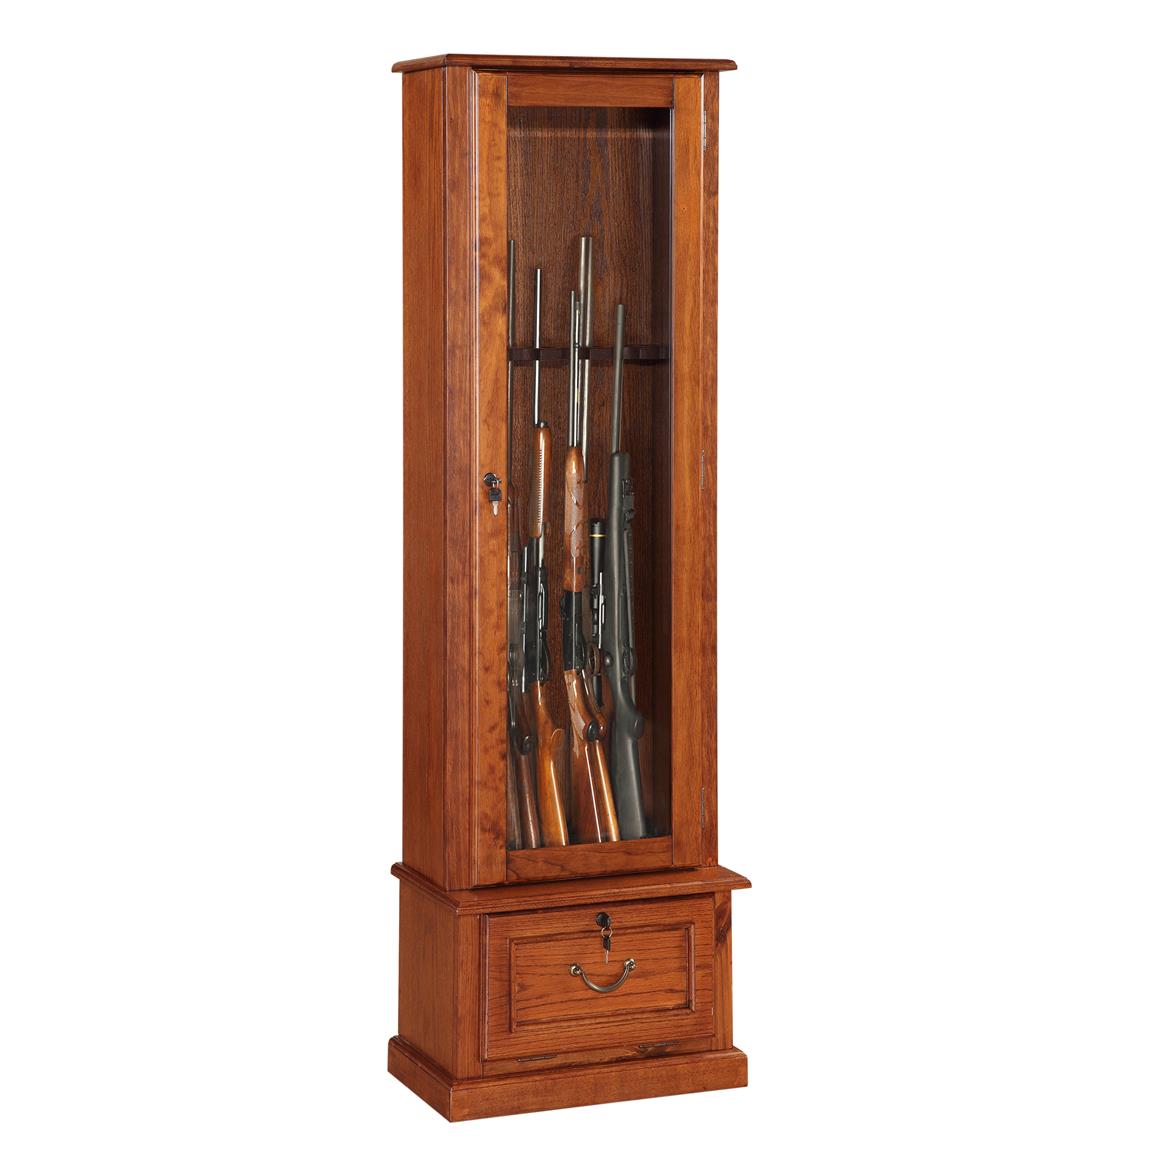 8 Gun Cabinet American Furniture Classics 654914 Gun Cabinets